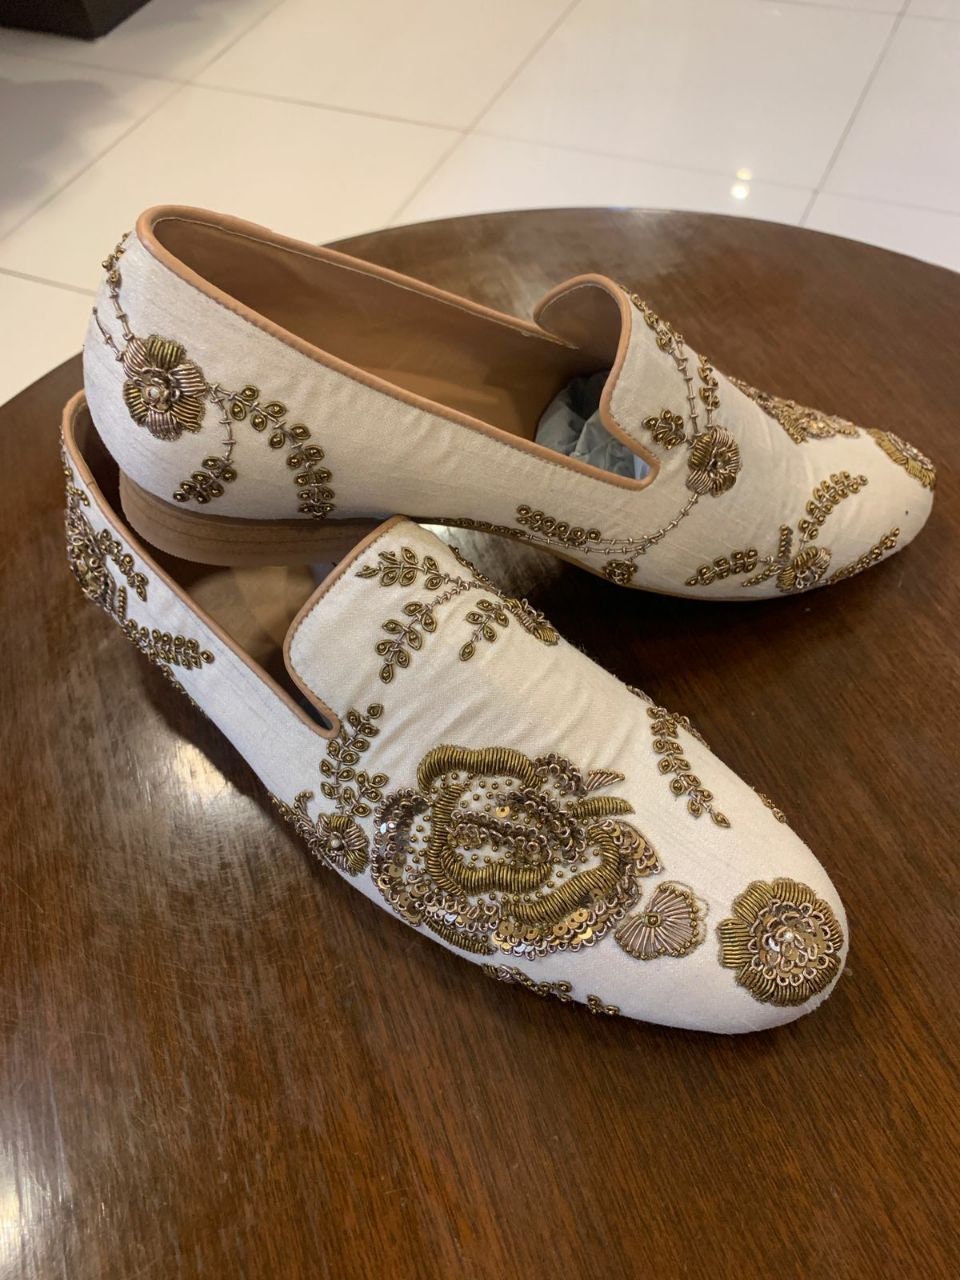 Schoenen Herenschoenen Juttis en mojaris Mens sherwani jutti trouwschoenen Indiase schoenen etnische schoenen mojari juti handgemaakte jutti 